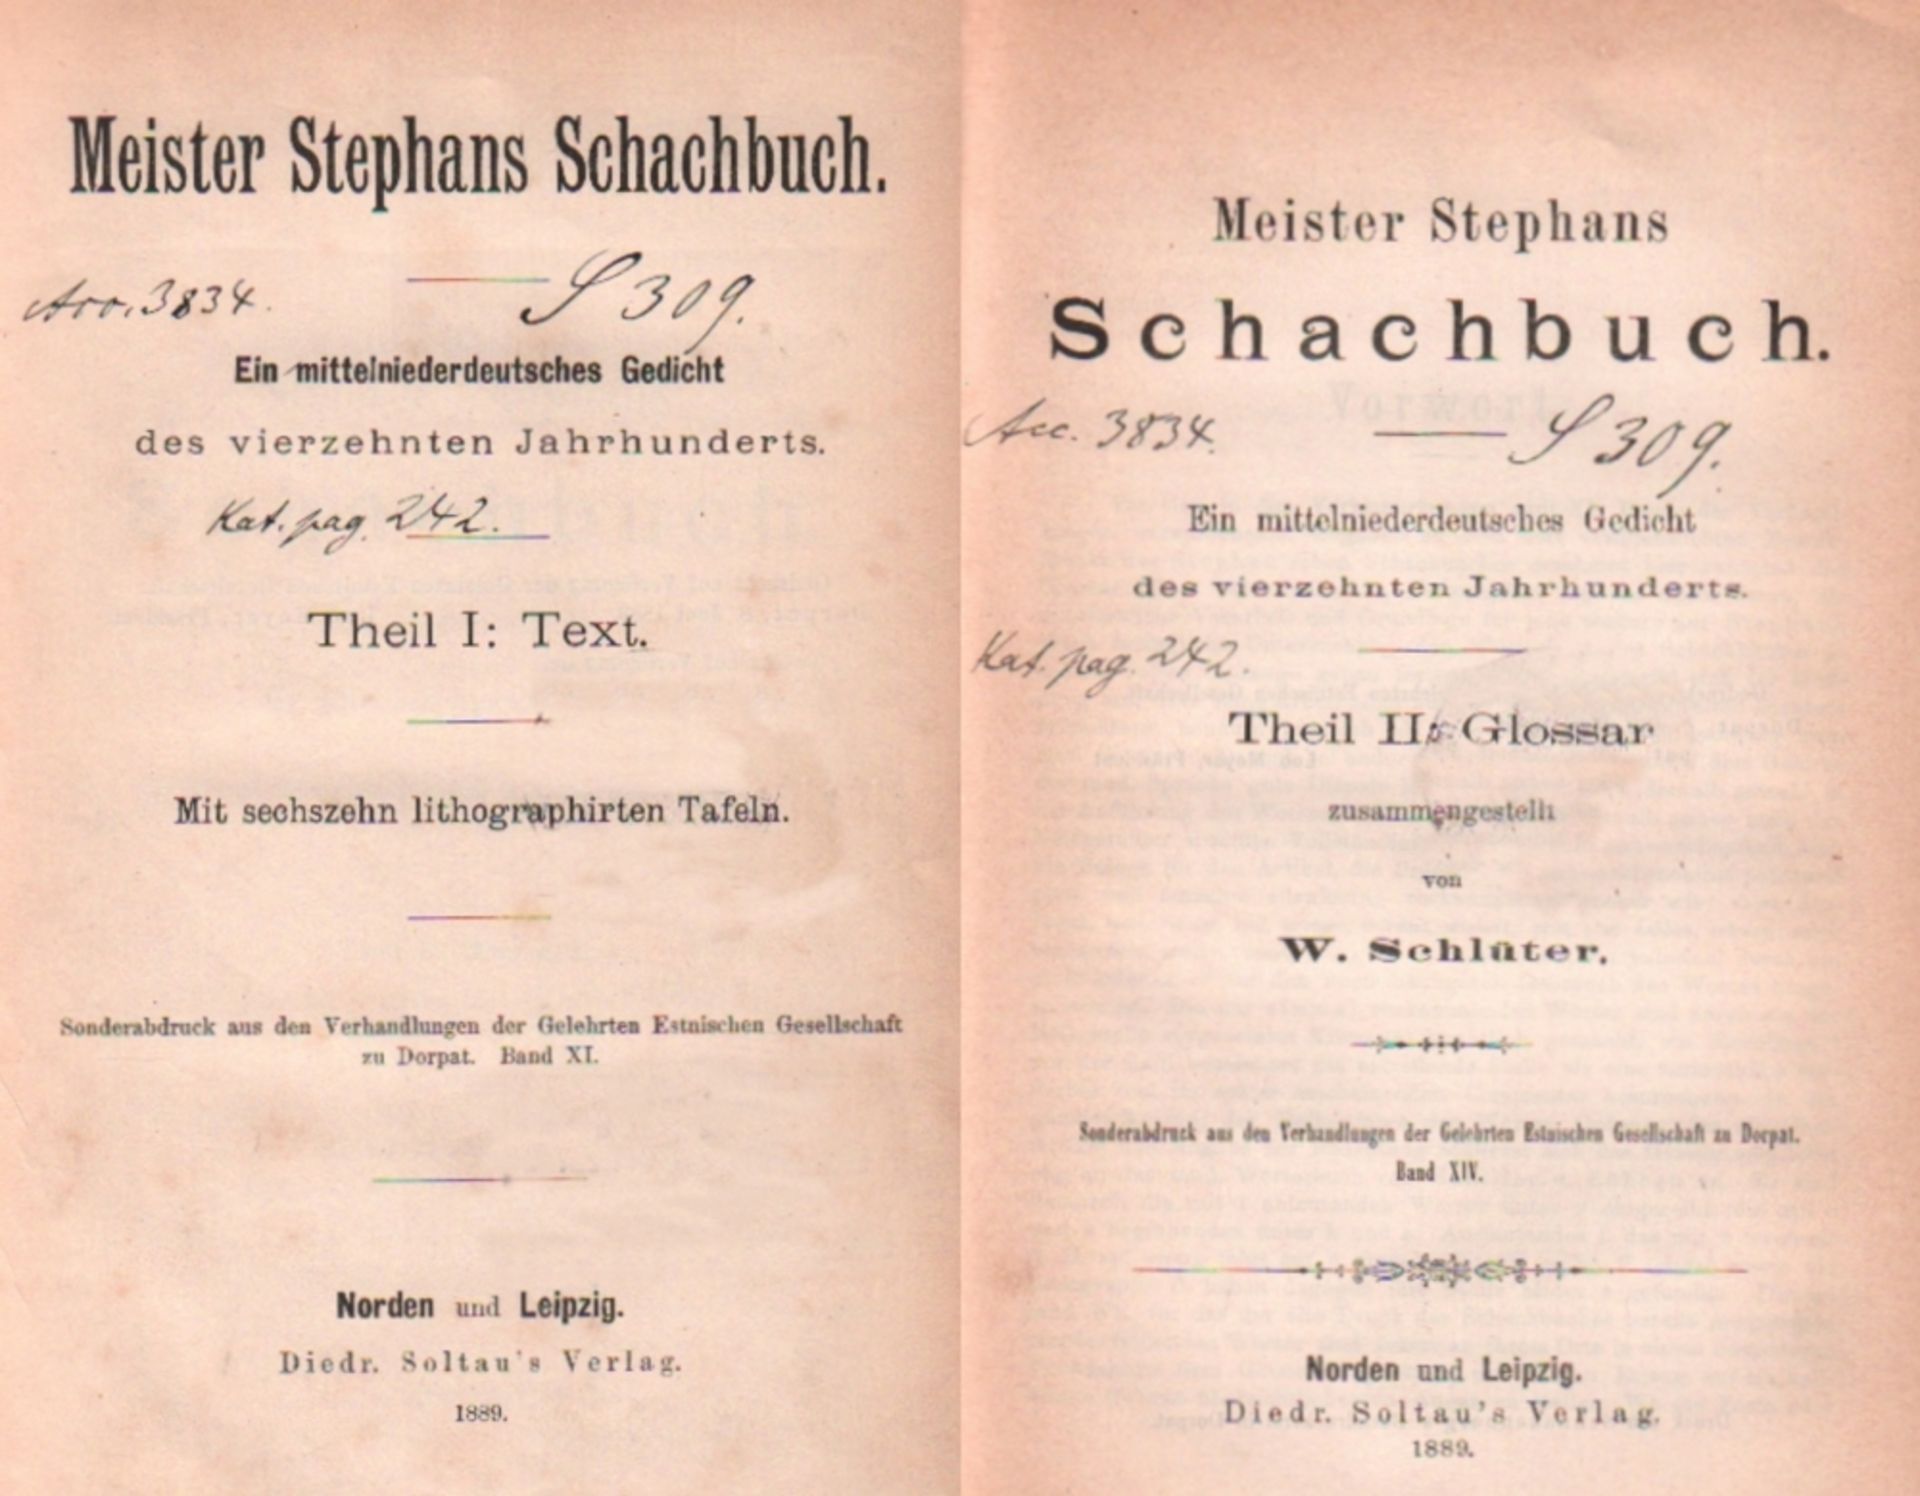 Meister Stephans Schachbuch. Ein mittelniederdeutsches Gedicht des vierzehnten Jahrhunderts. Theil